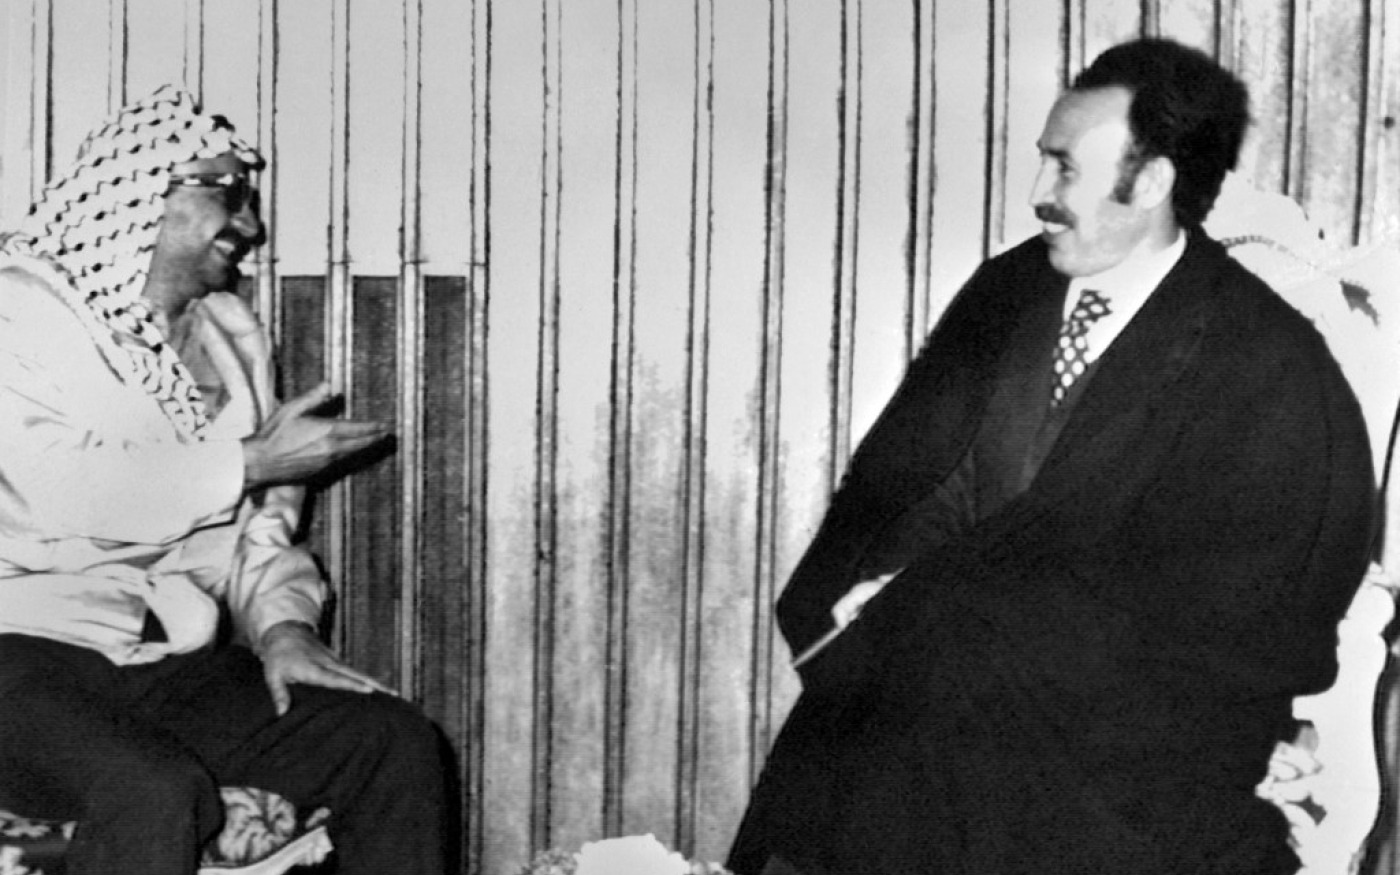 Le président algérien Houari Boumédiène rencontre le président de l’Organisation de libération de la Palestine (OLP), Yasser Arafat, le 18 novembre 1974 à Alger (AFP)